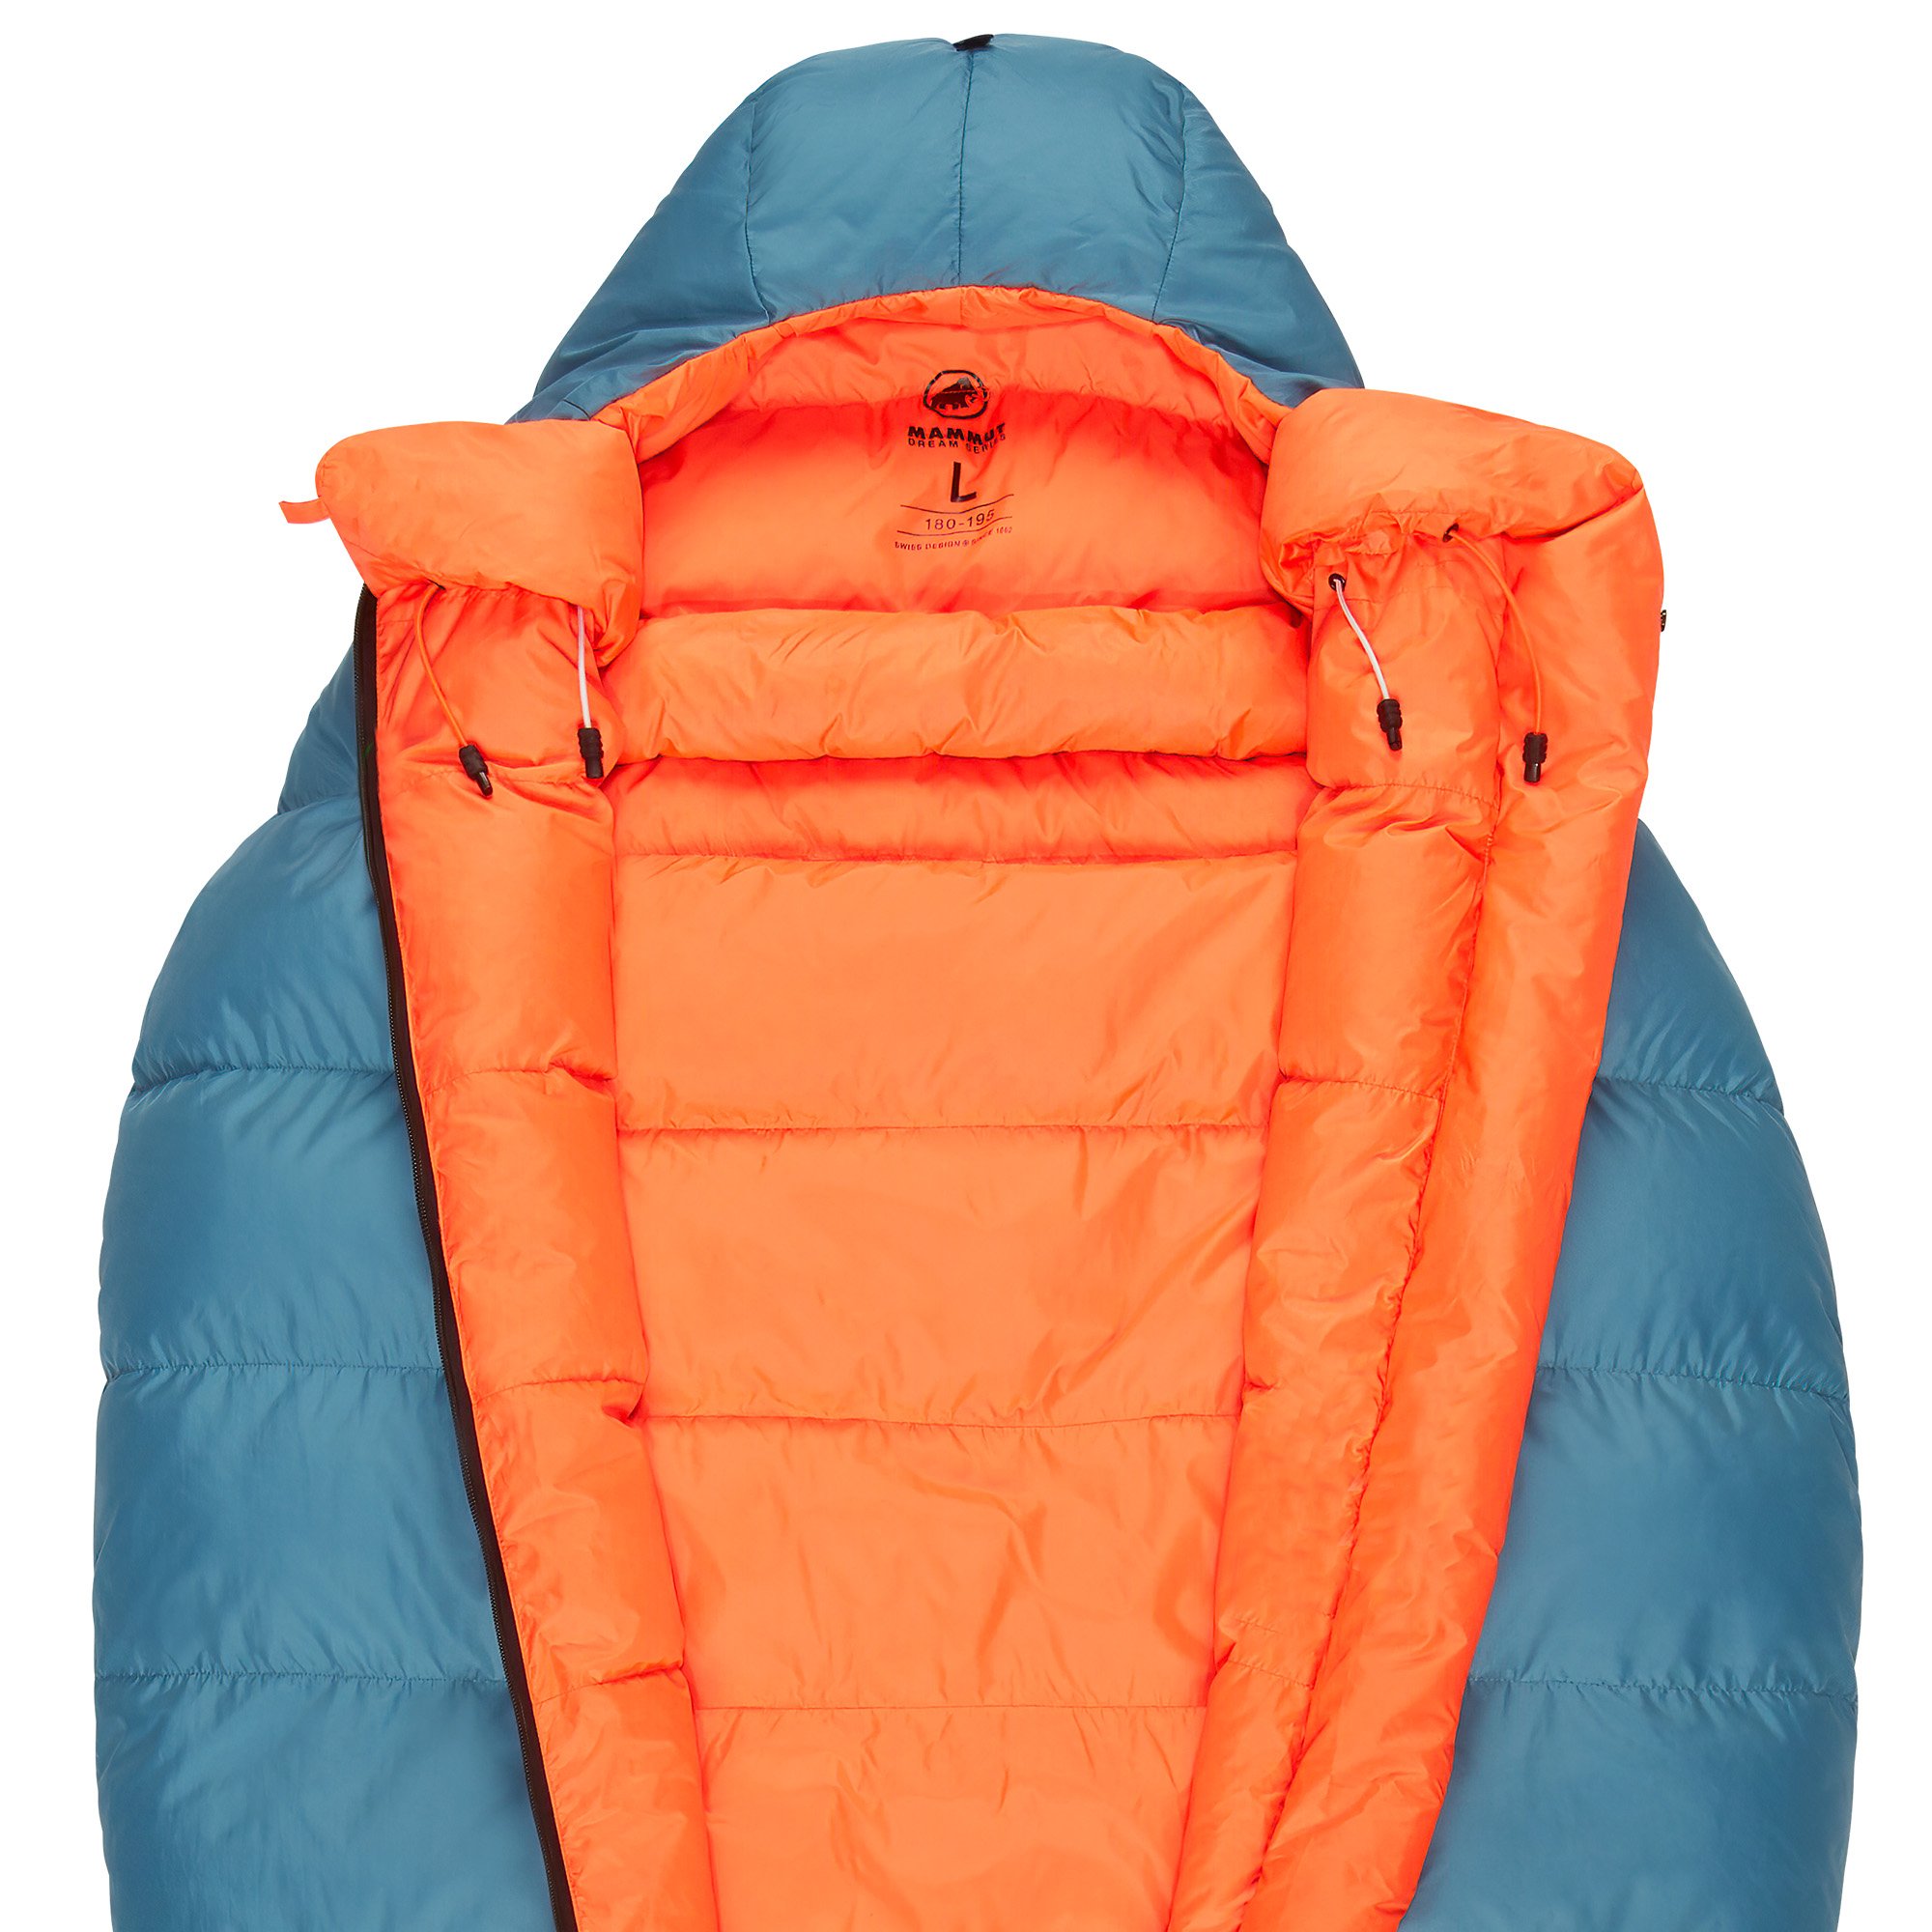 Mammut Comfort Down Bag -5C Lightweight Sleeping Bag